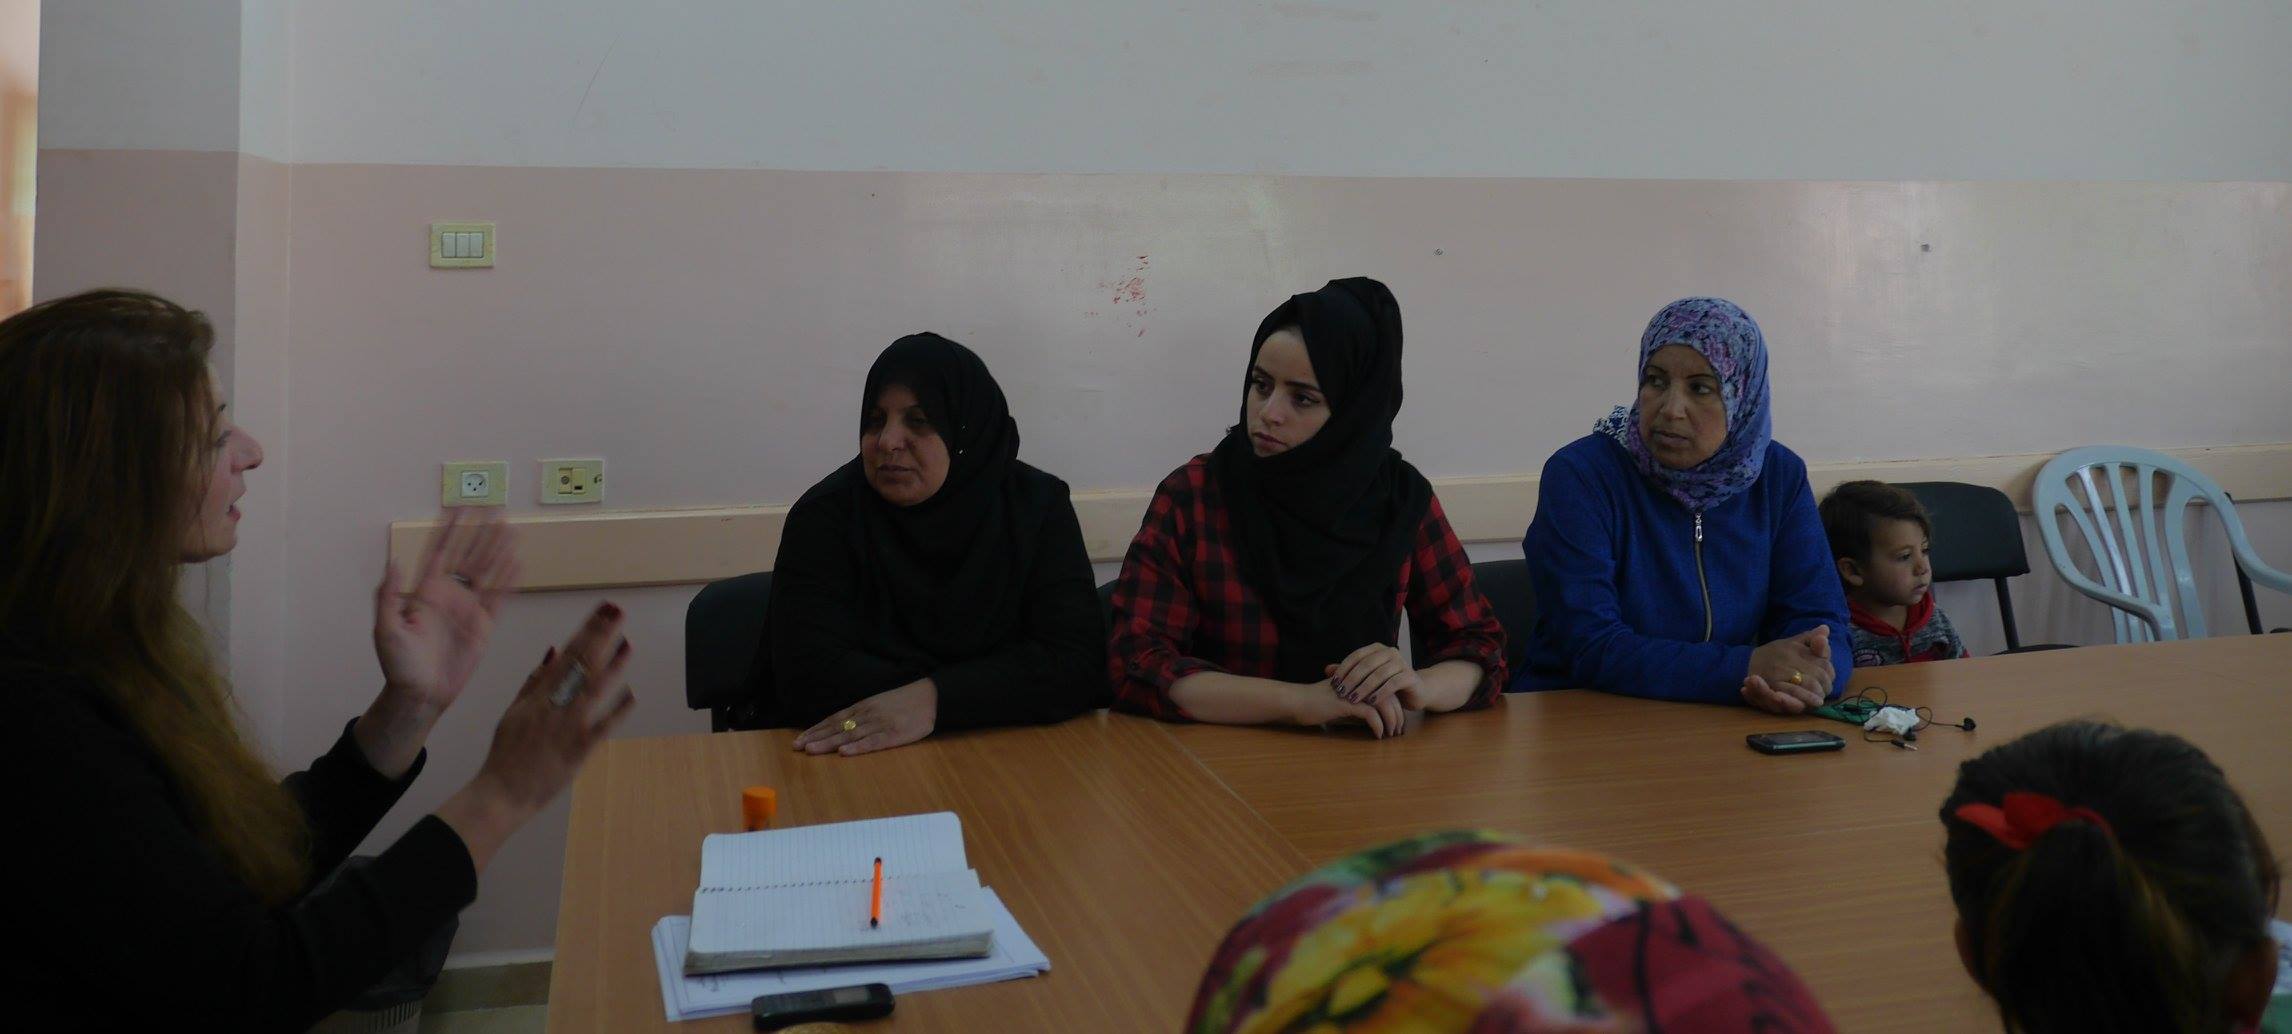  دعم النساء البدويات والريفيات لانشاء وادارة المشاريع المدرّة للدخل في جنوب الخليل وشرق القدس .